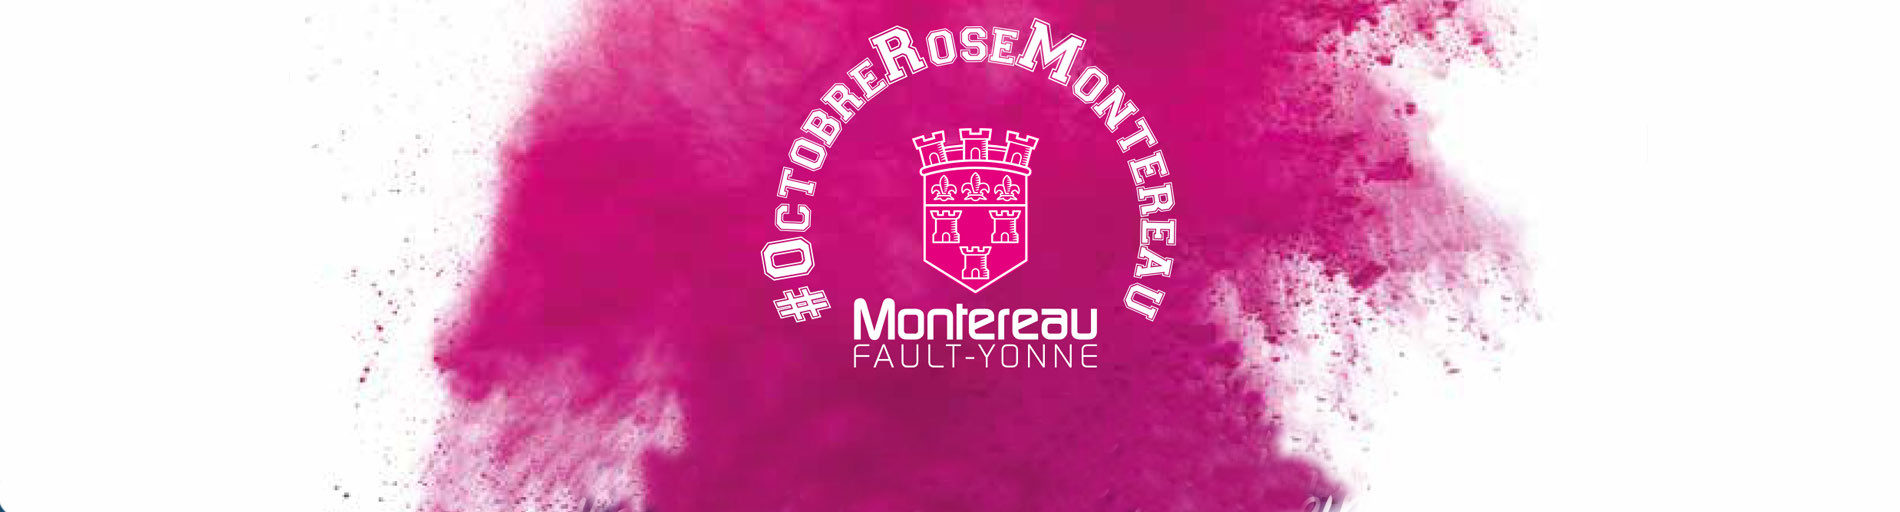 Résultat de recherche d'images pour "octobre rose 2019 montereau fault yonne"